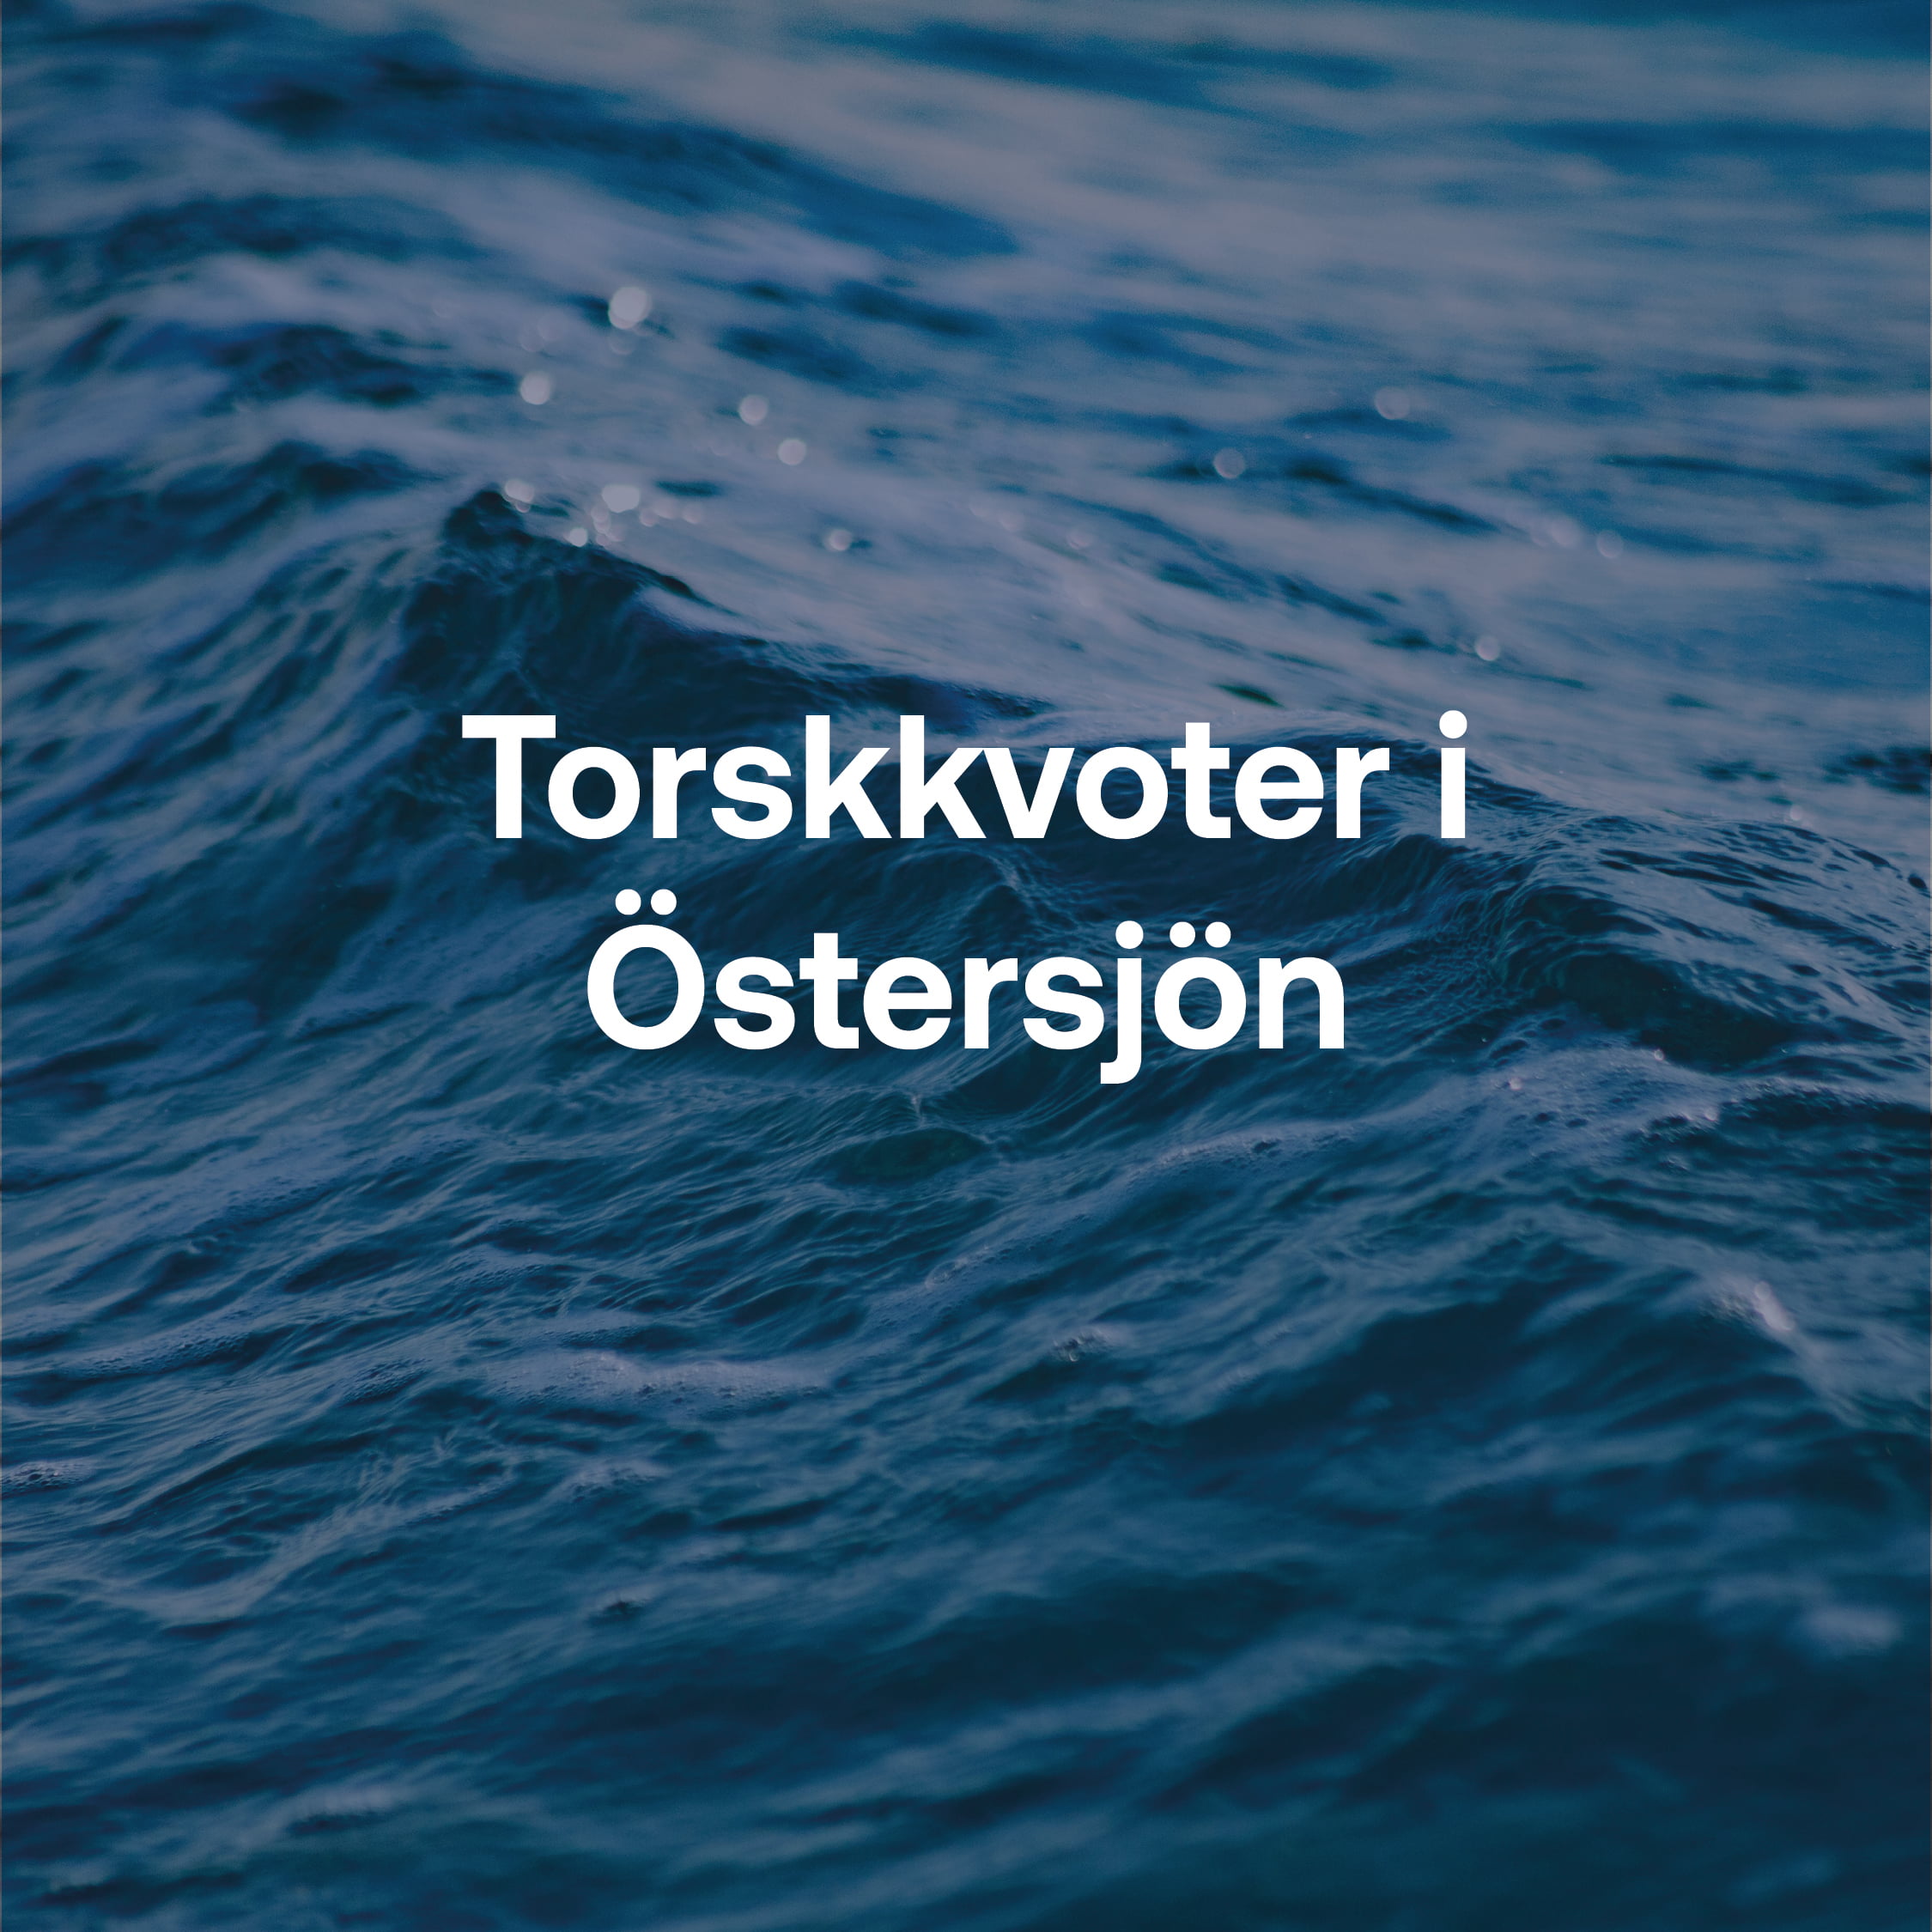 Torskkvoter i Östersjön.